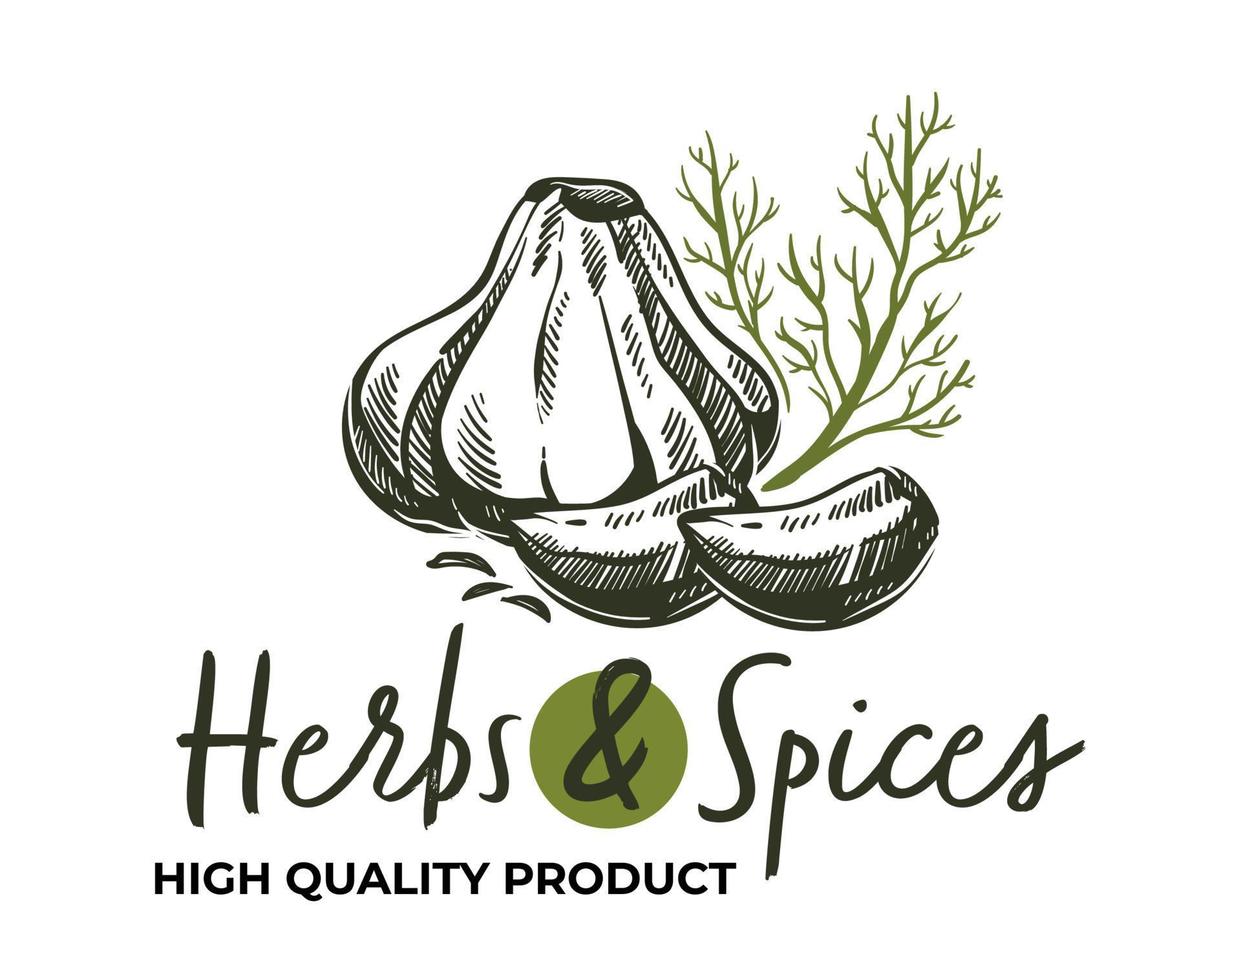 Shop-Logo für hochwertige Produkte von Kräutern und Gewürzen vektor